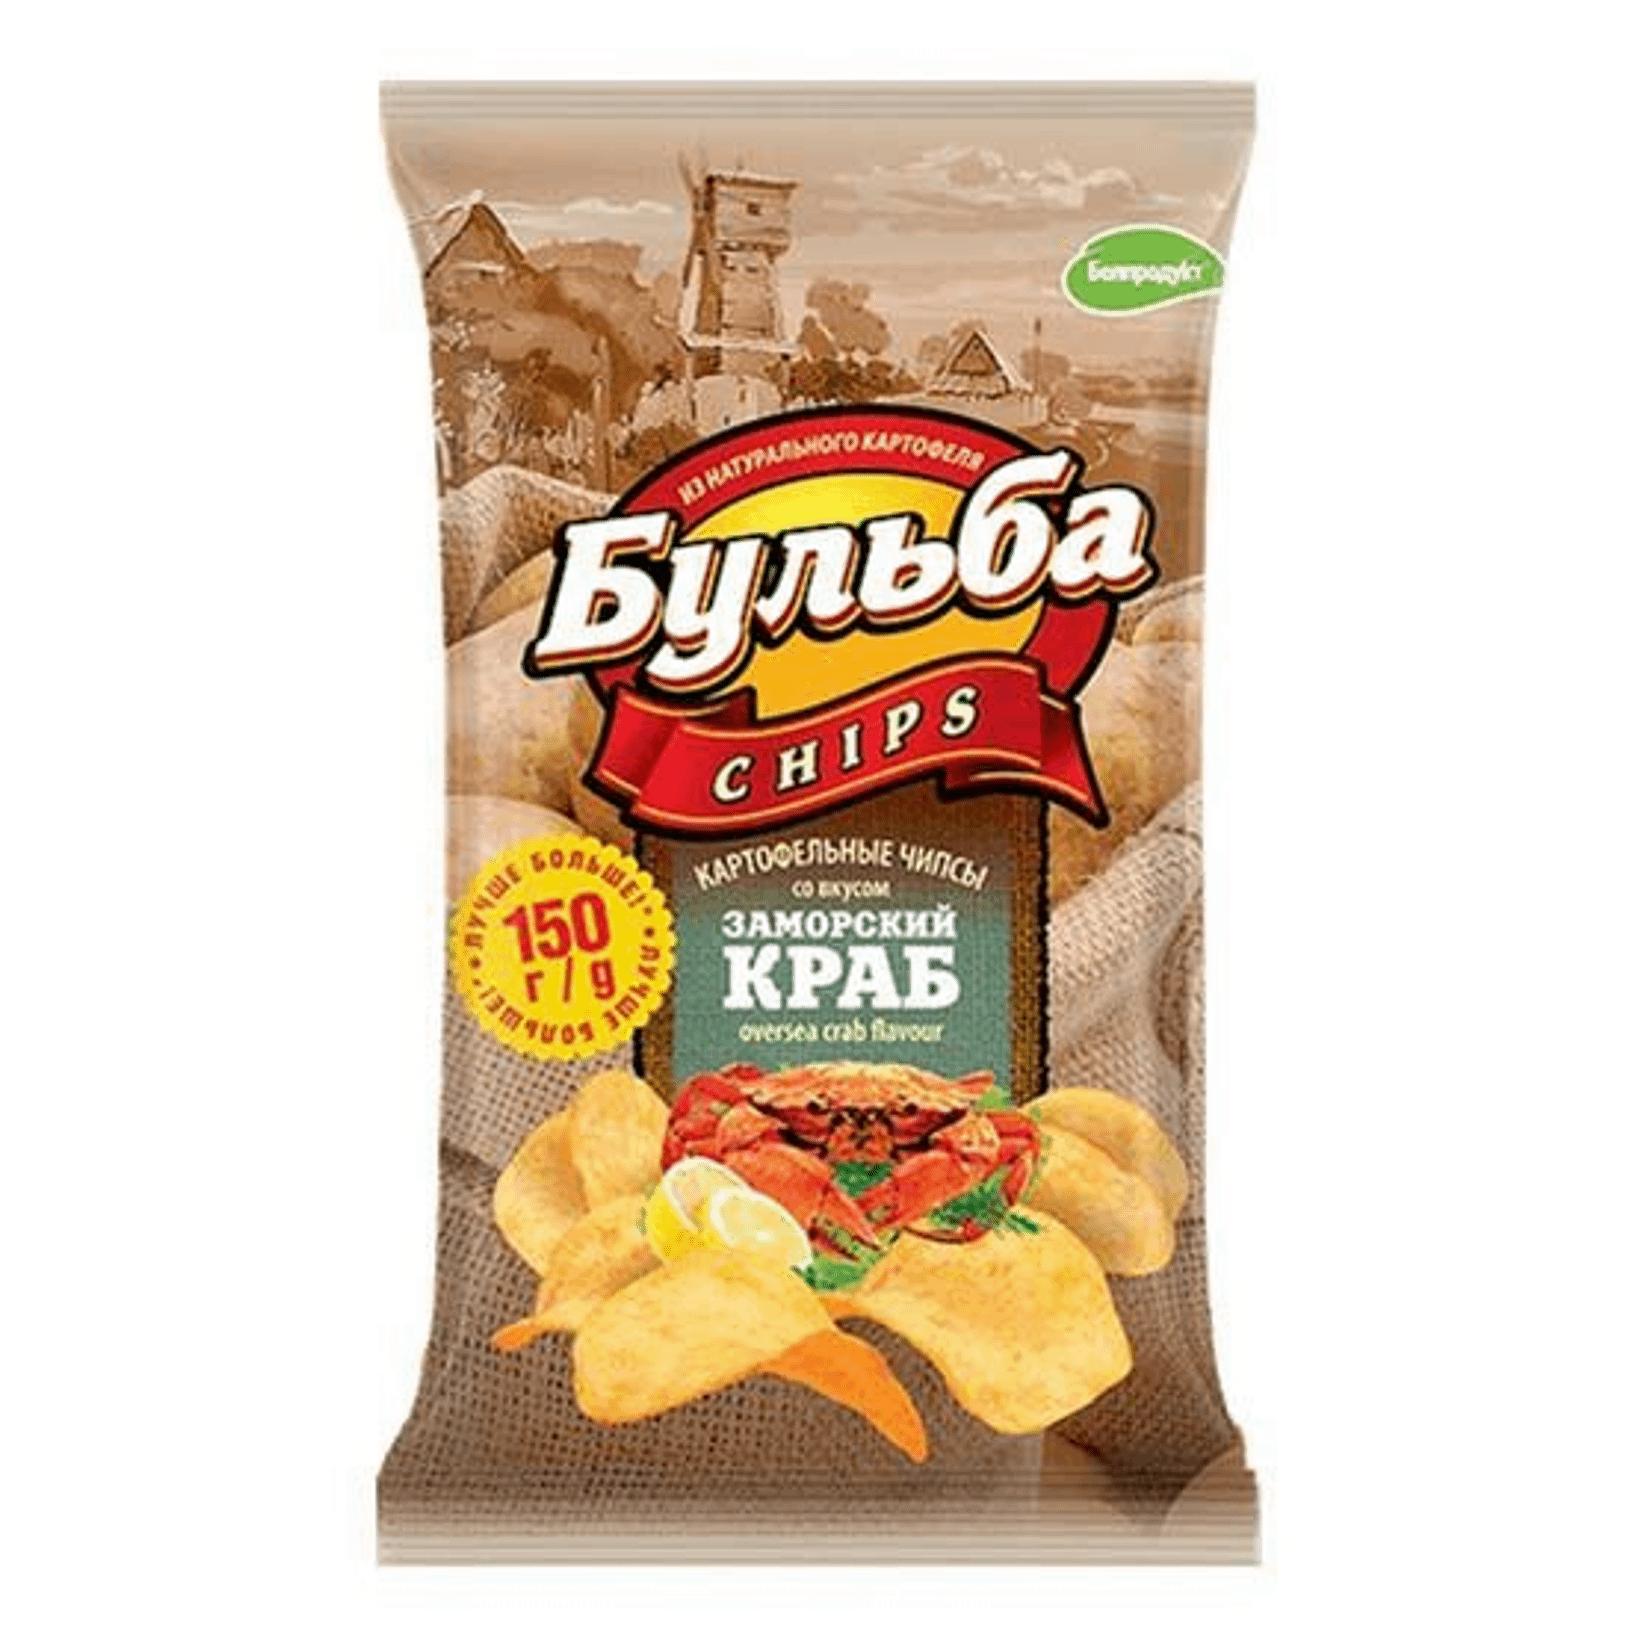 Чипсы из сырого картофеля Бульба chips со вкусом заморского краба 150 гр., пакет